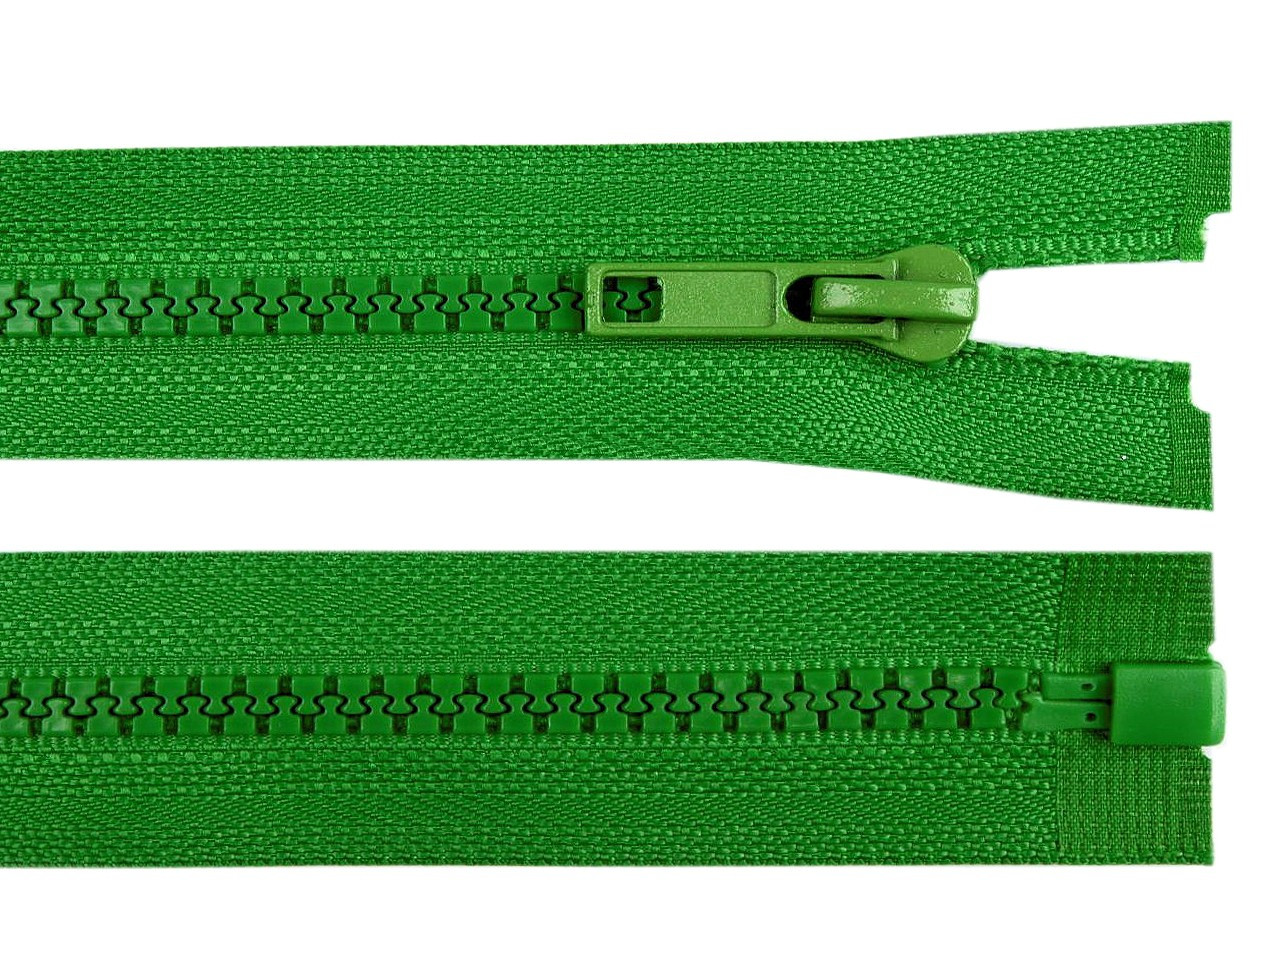 Kostěný zip No 5 délka 45 cm bundový, barva 239 zelená irská